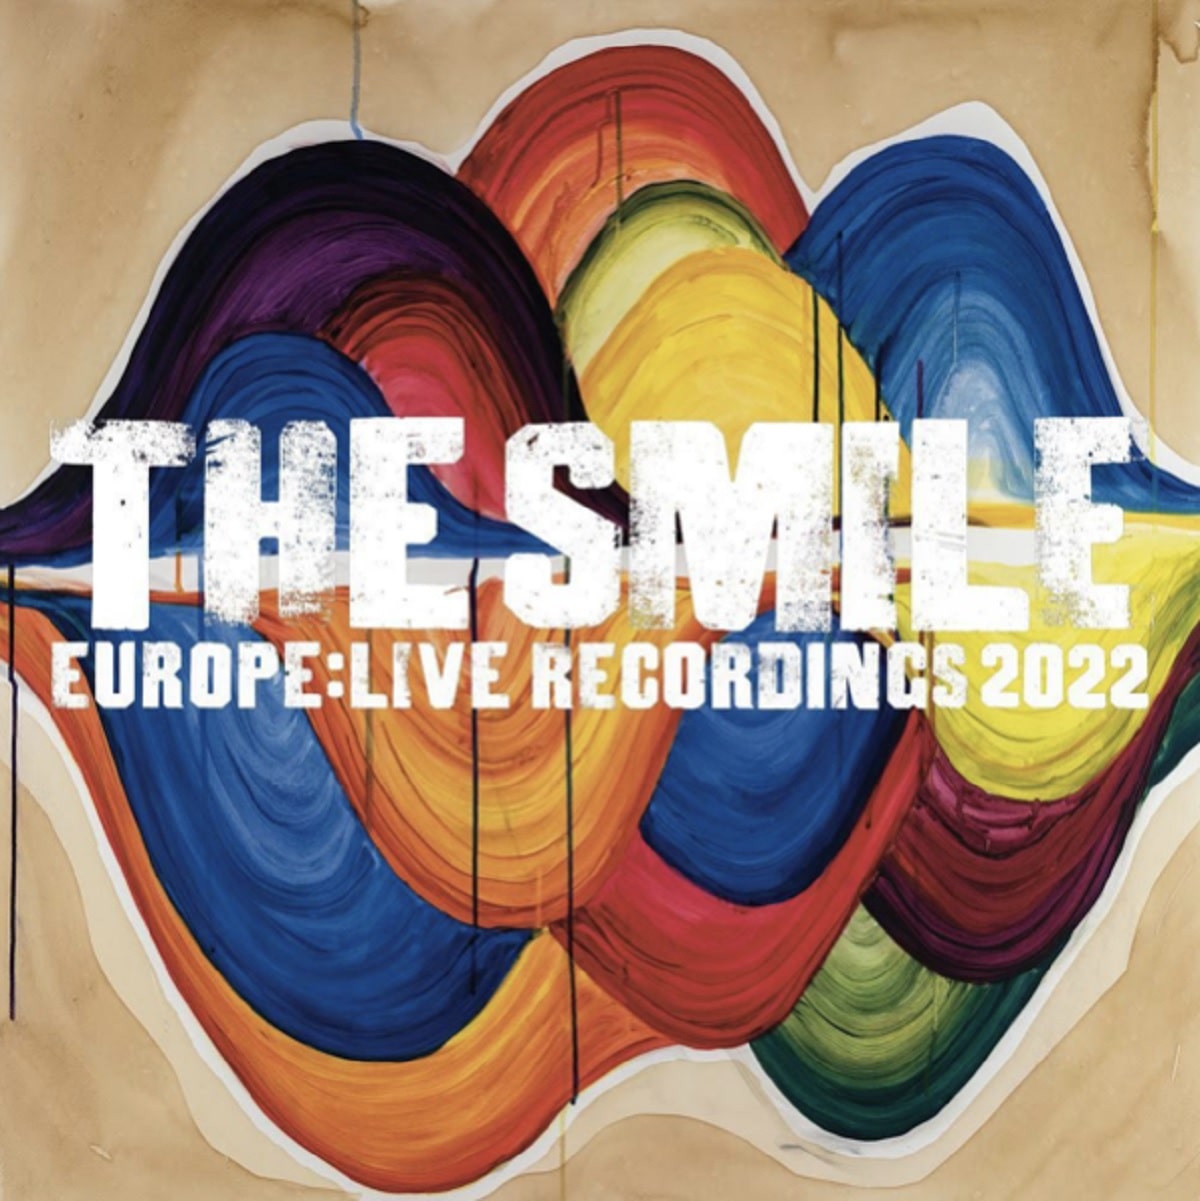 Tapa de Europe: Live Recordings 2022, EP de The Smile